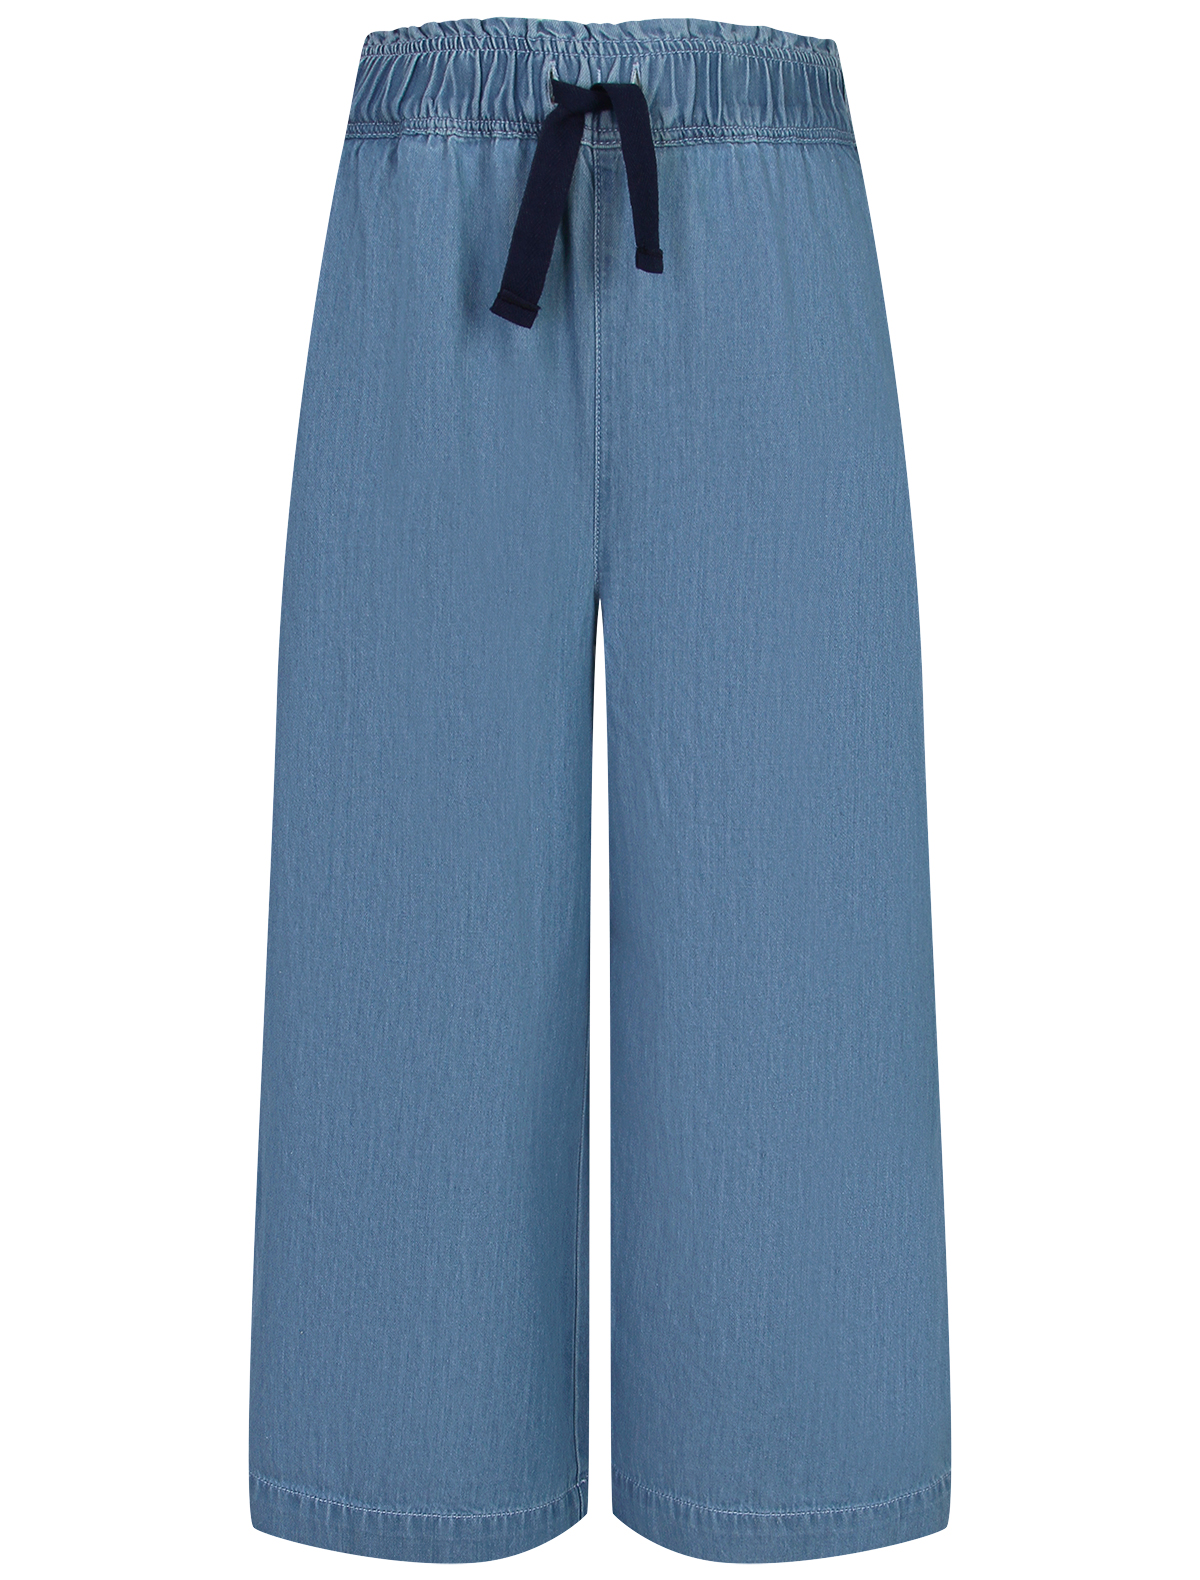 джинсы petit bateau для девочки, голубые